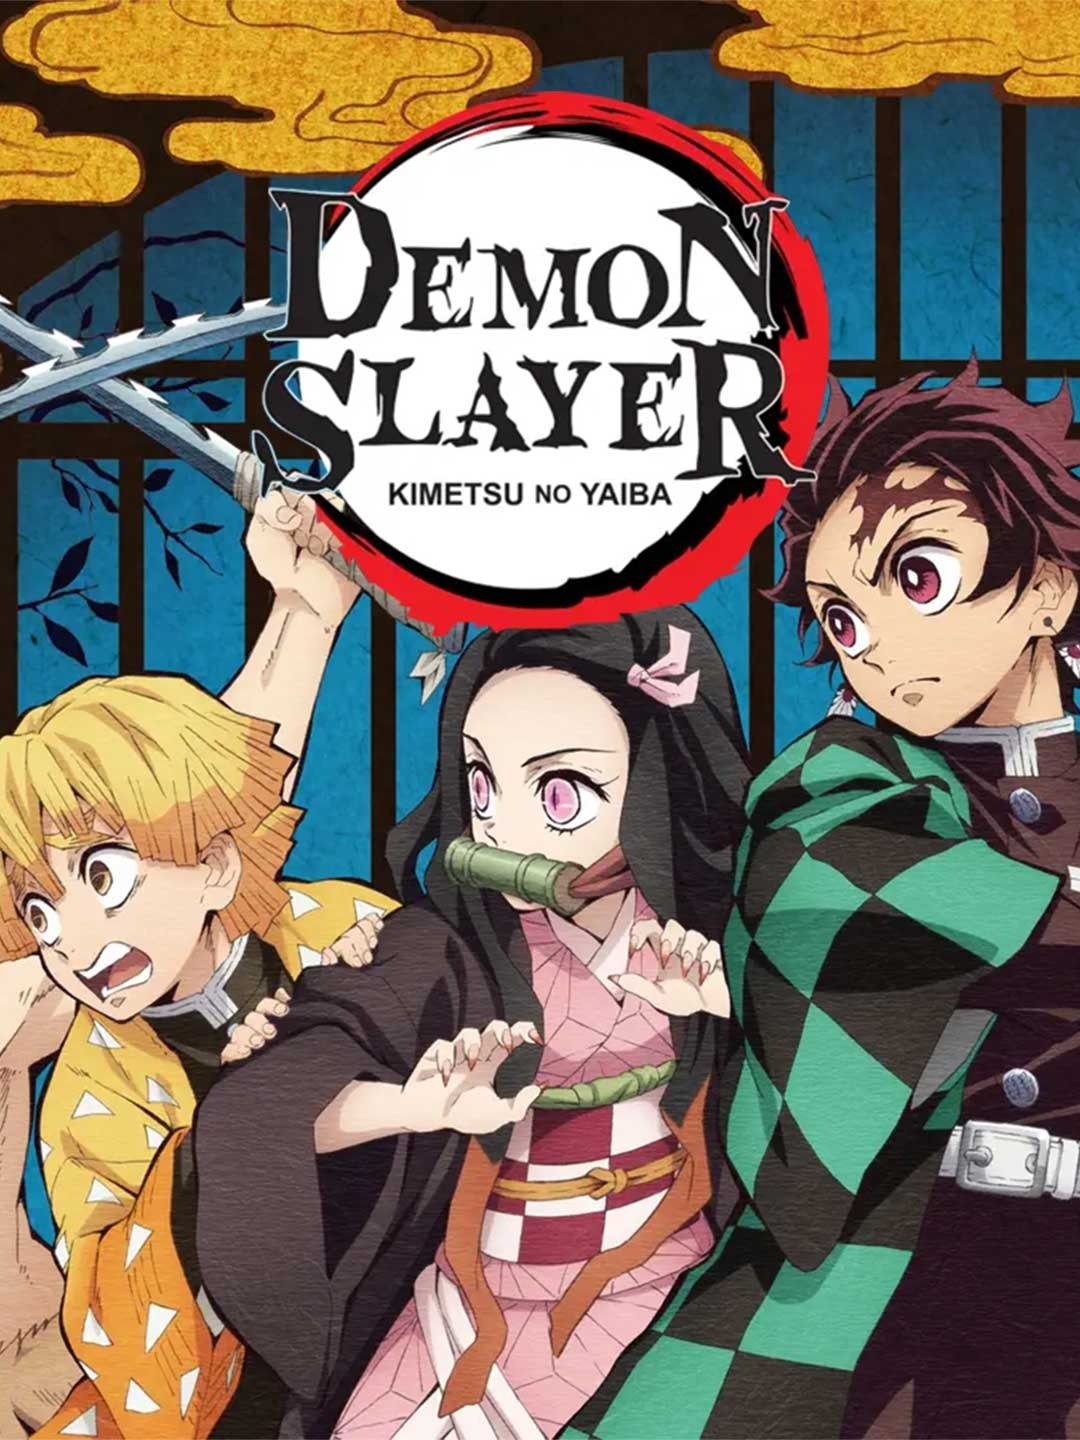 Demon Slayer: Kimetsu no - Demon Slayer: Kimetsu no Yaiba